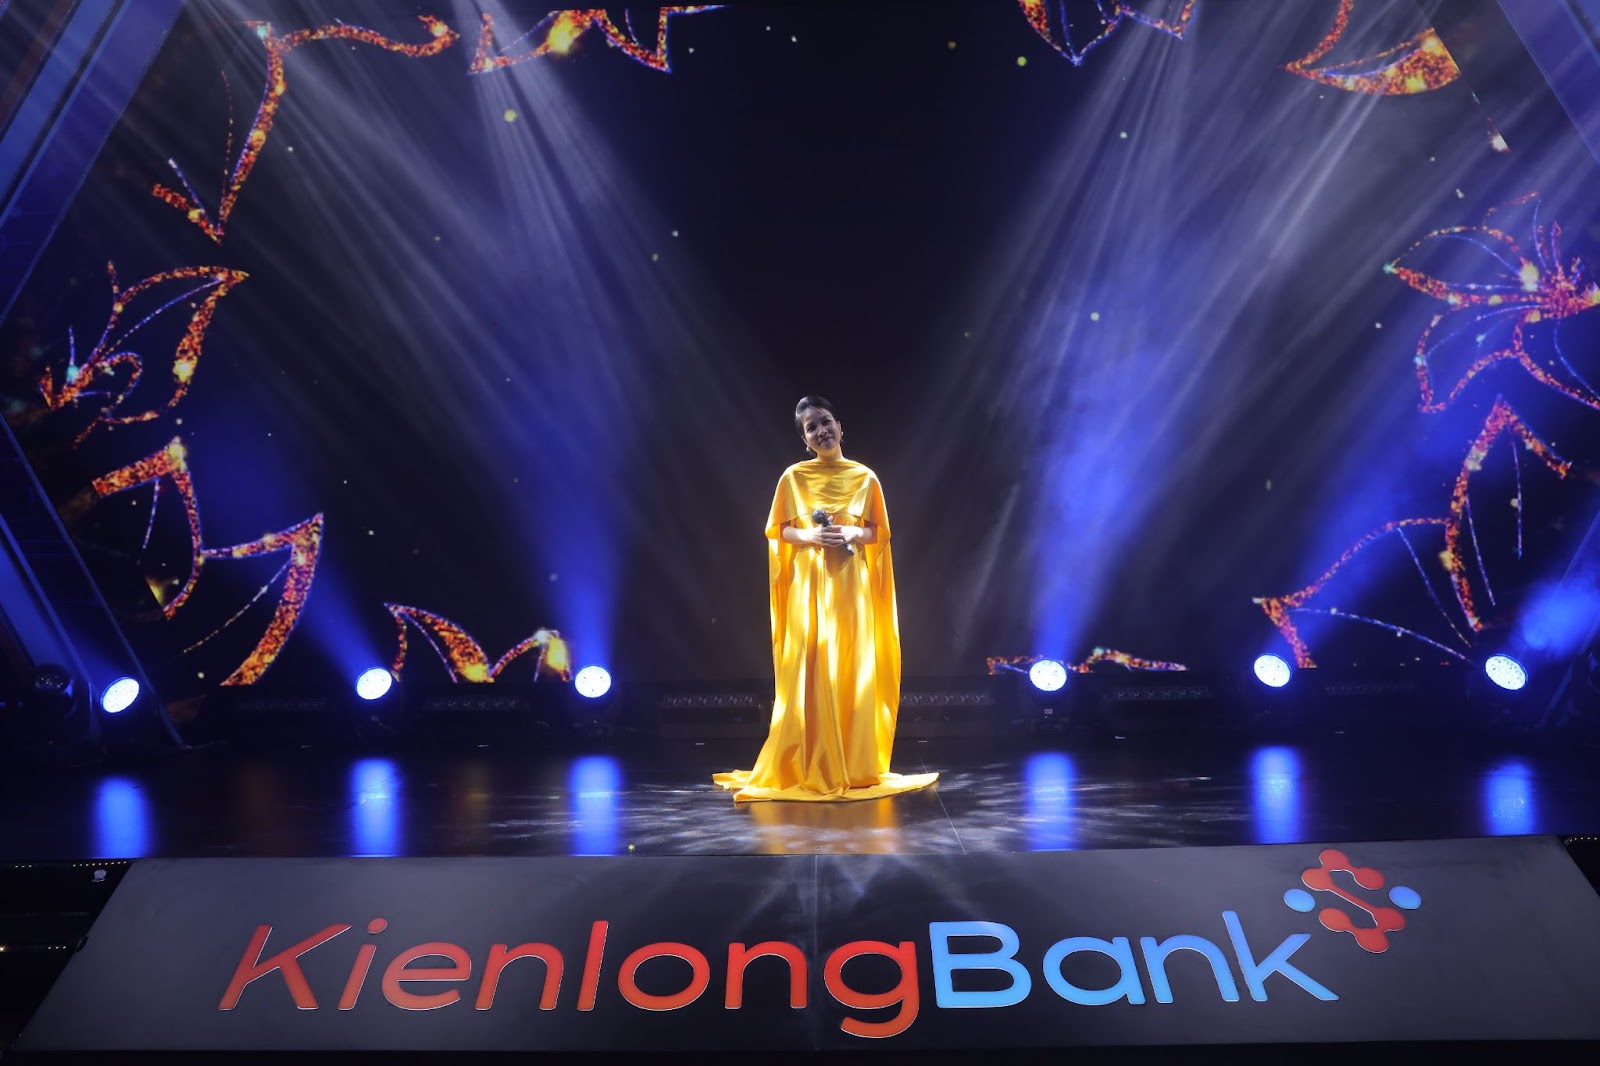 Mãn nhãn với chương trình biểu diễn nghệ thuật tại sự kiện kỷ niệm 26 năm KienlongBank - Ảnh 3.